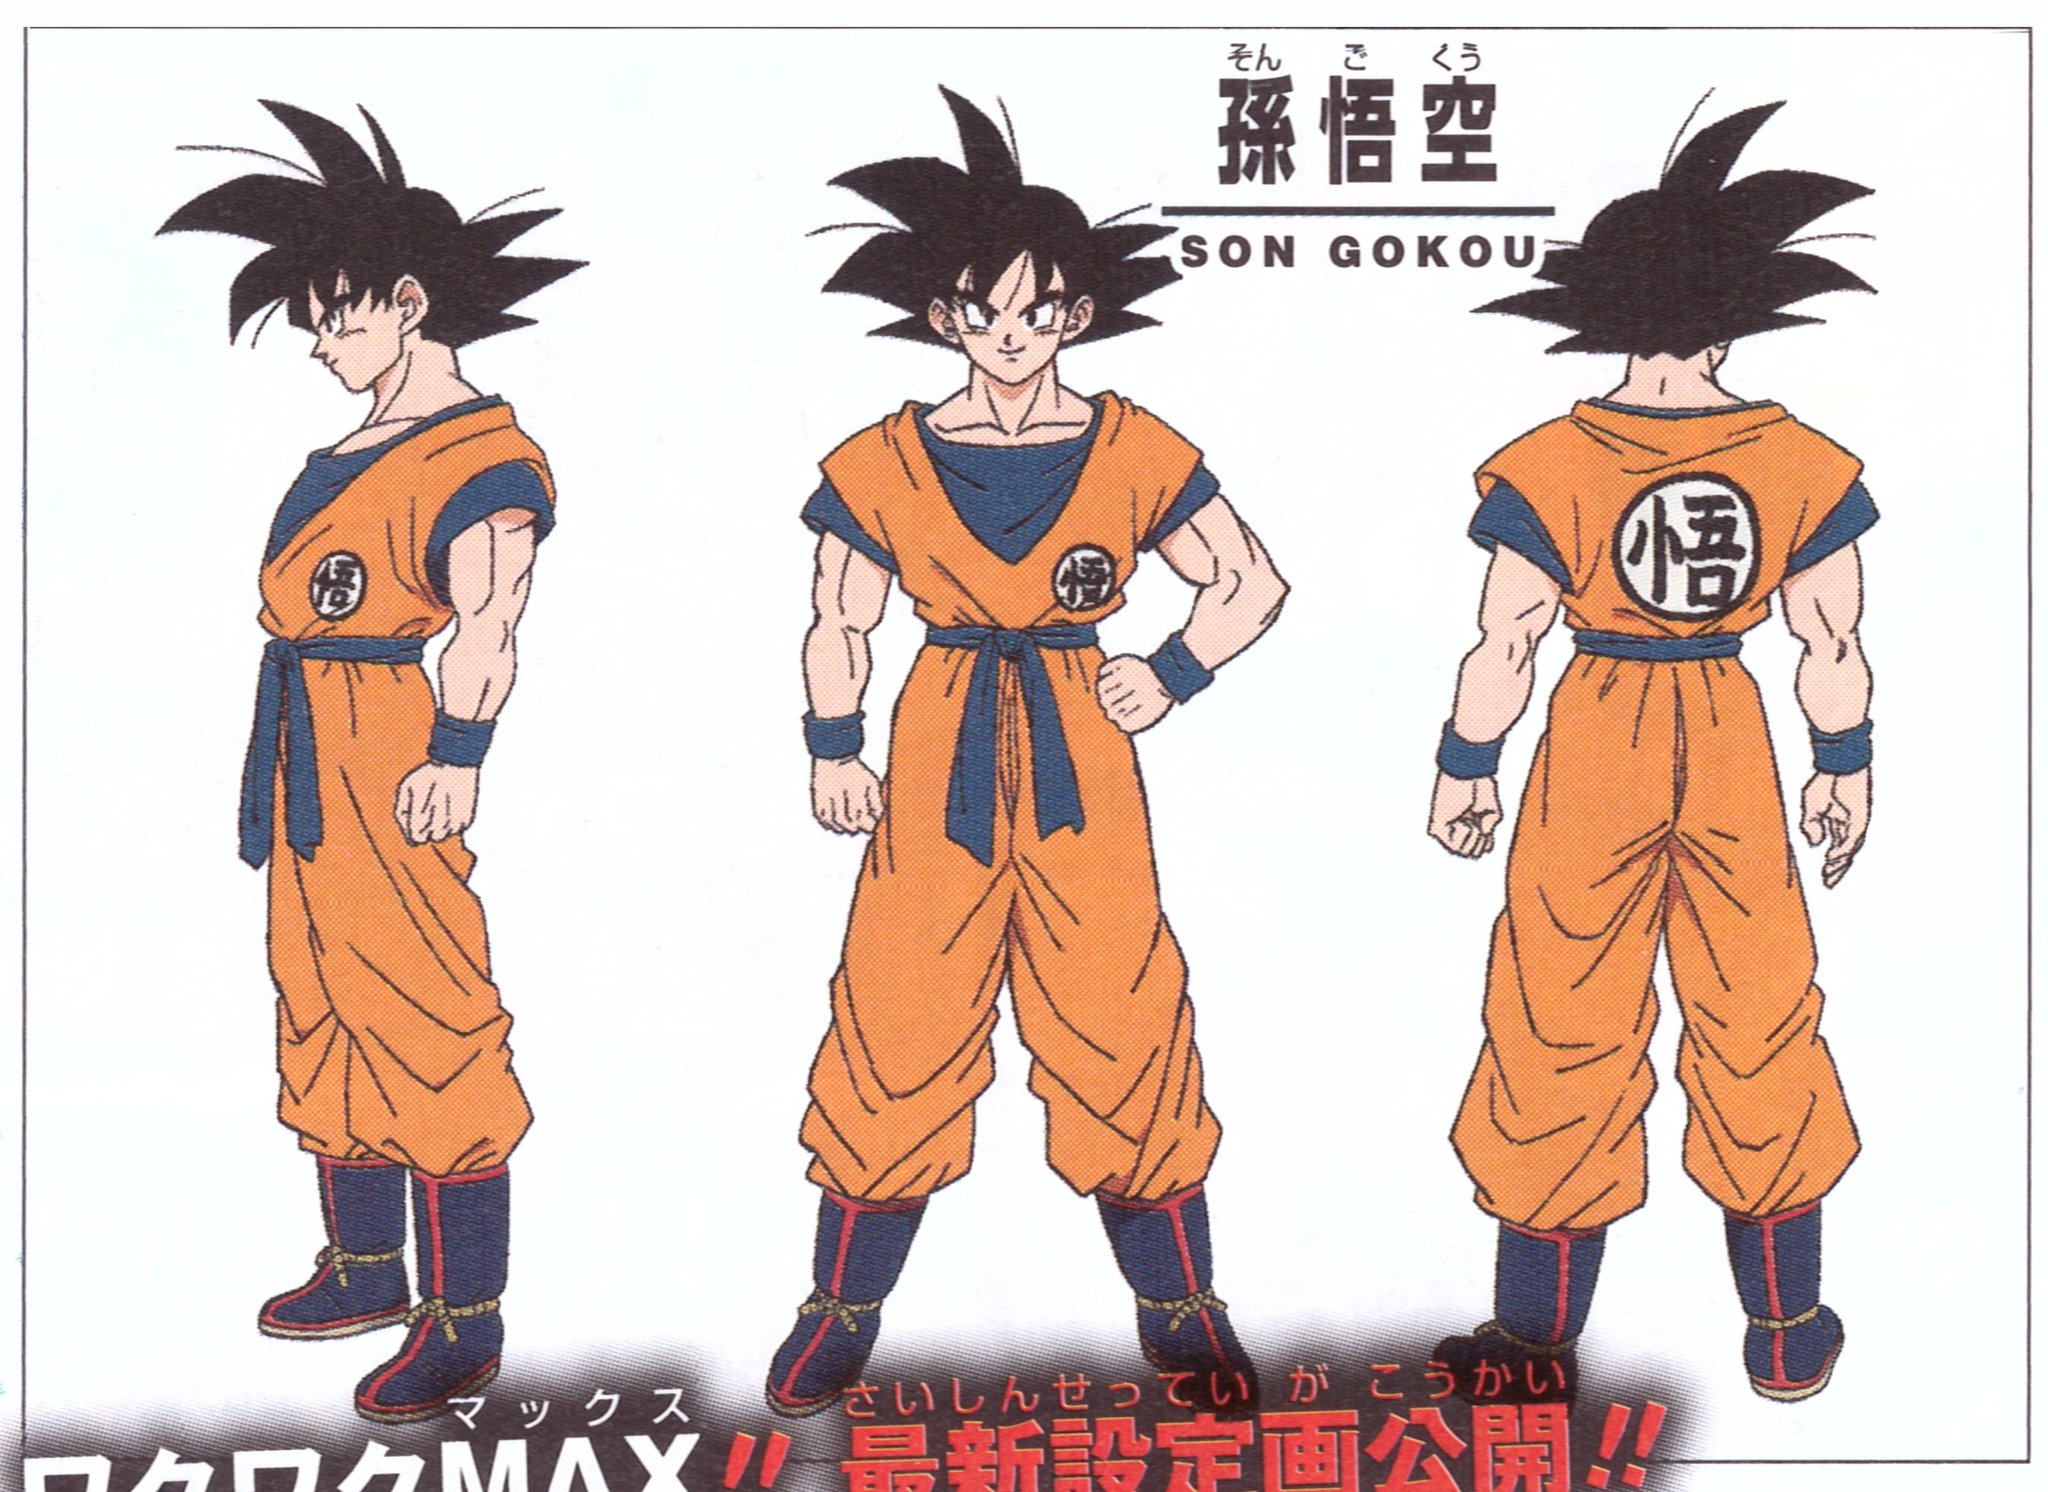 توییتر \ Antonio Sánchez-Migallón Jiménez در توییتر: «Diseño de Goku en HD,  por Naohiro Shintani, para la película de Dragon Ball Super. Fuente:  @ErrenVanDuine /KcpRNmei0f»